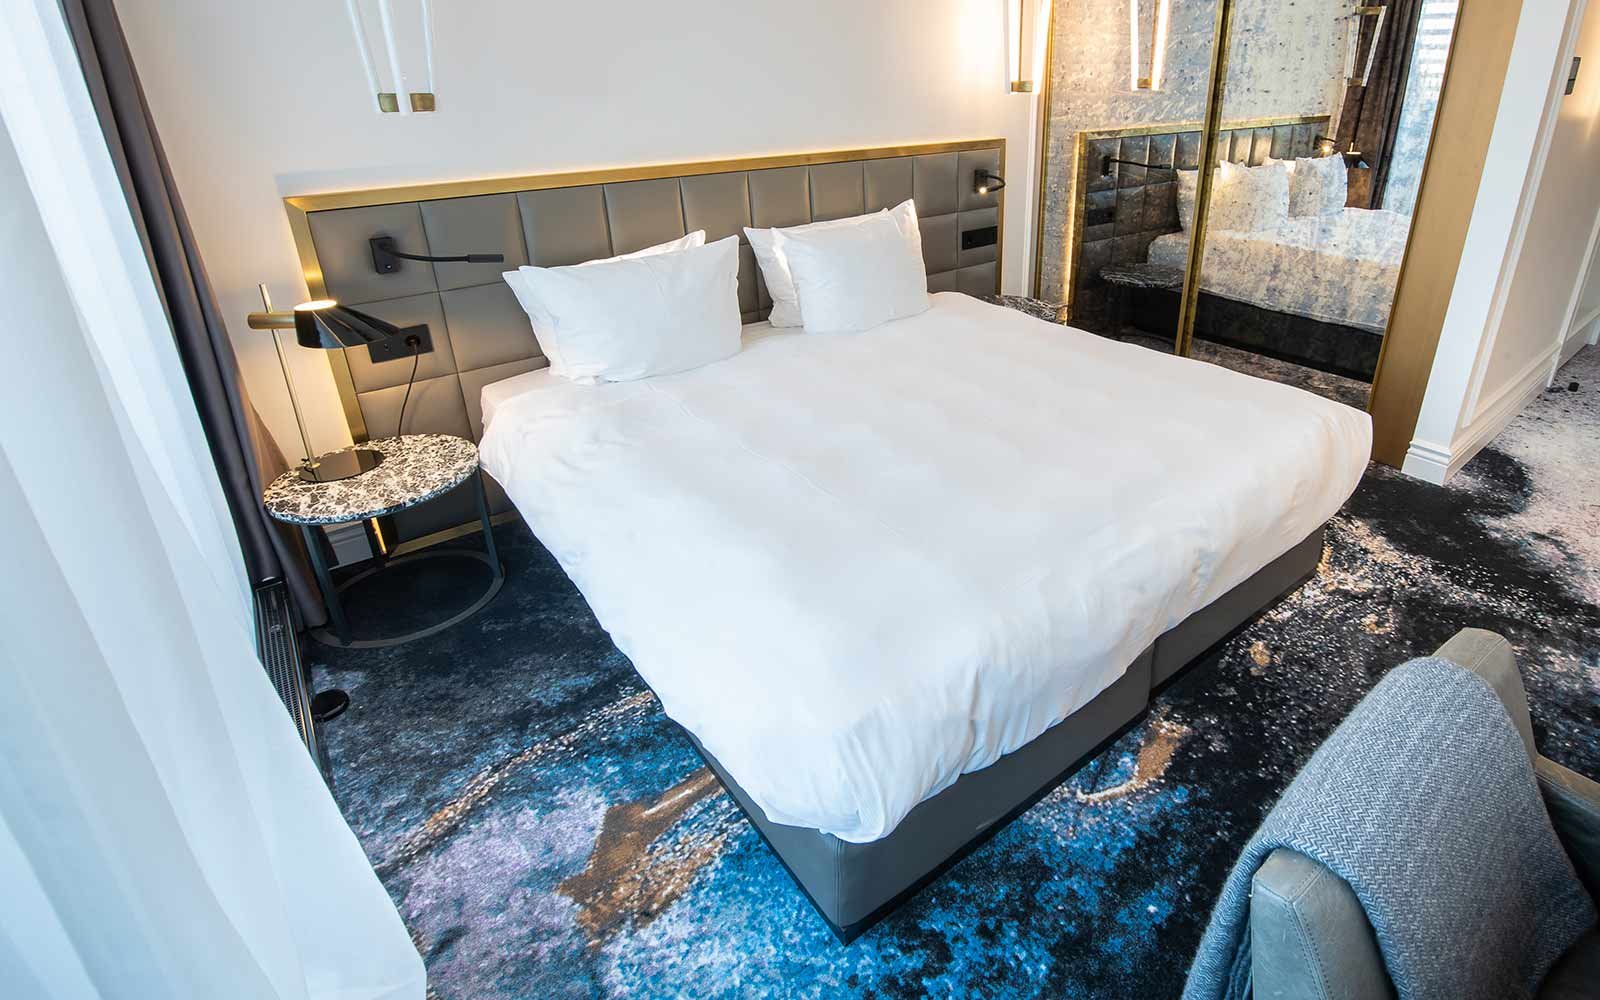 Hotel Teppichboden - Designthema 2: Hotelzimmer mit Teppich in den Farben des Baltikums dazu Goldakzente und schlichtes graues Mobiliar